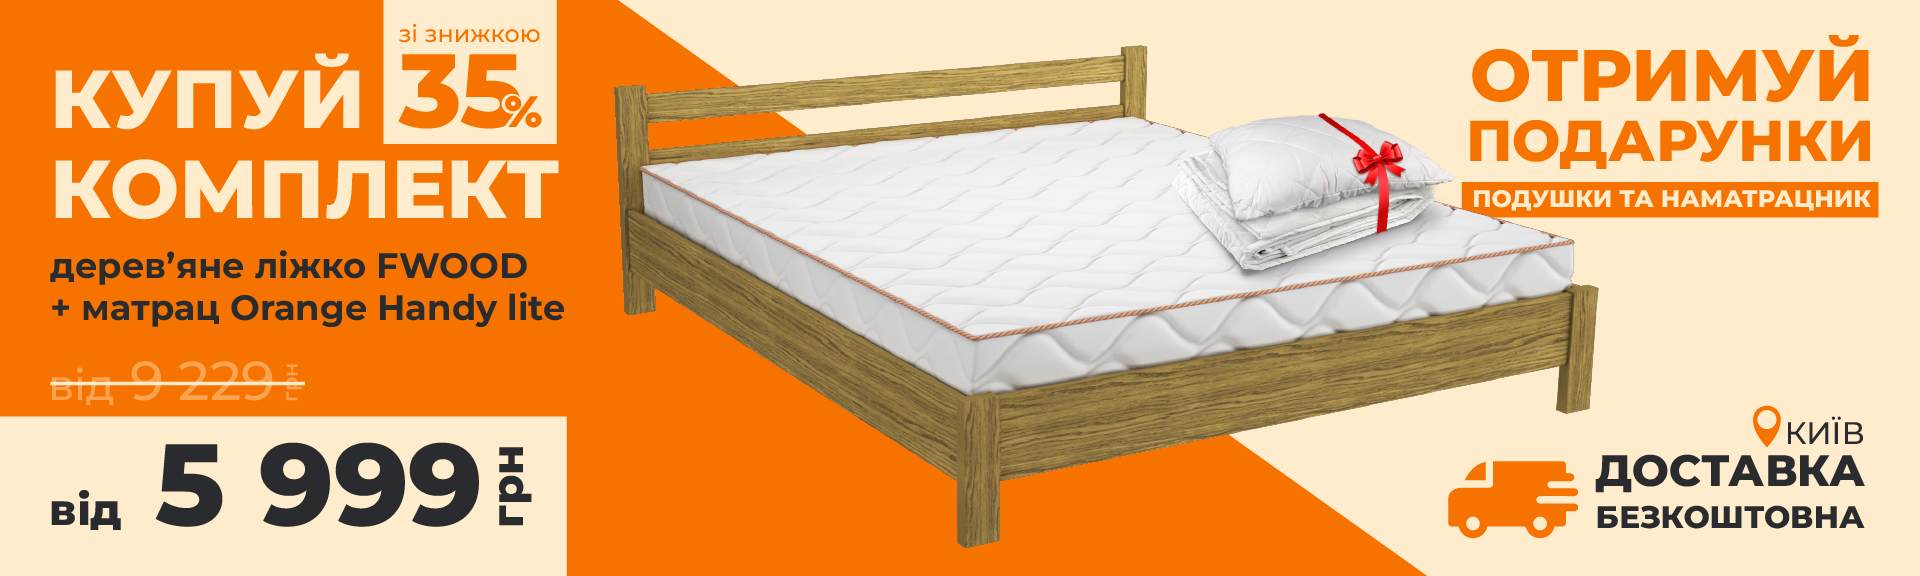 Акция 35% на Комплект кровать деревянная FWOOD и матрас Orange Handy Lite